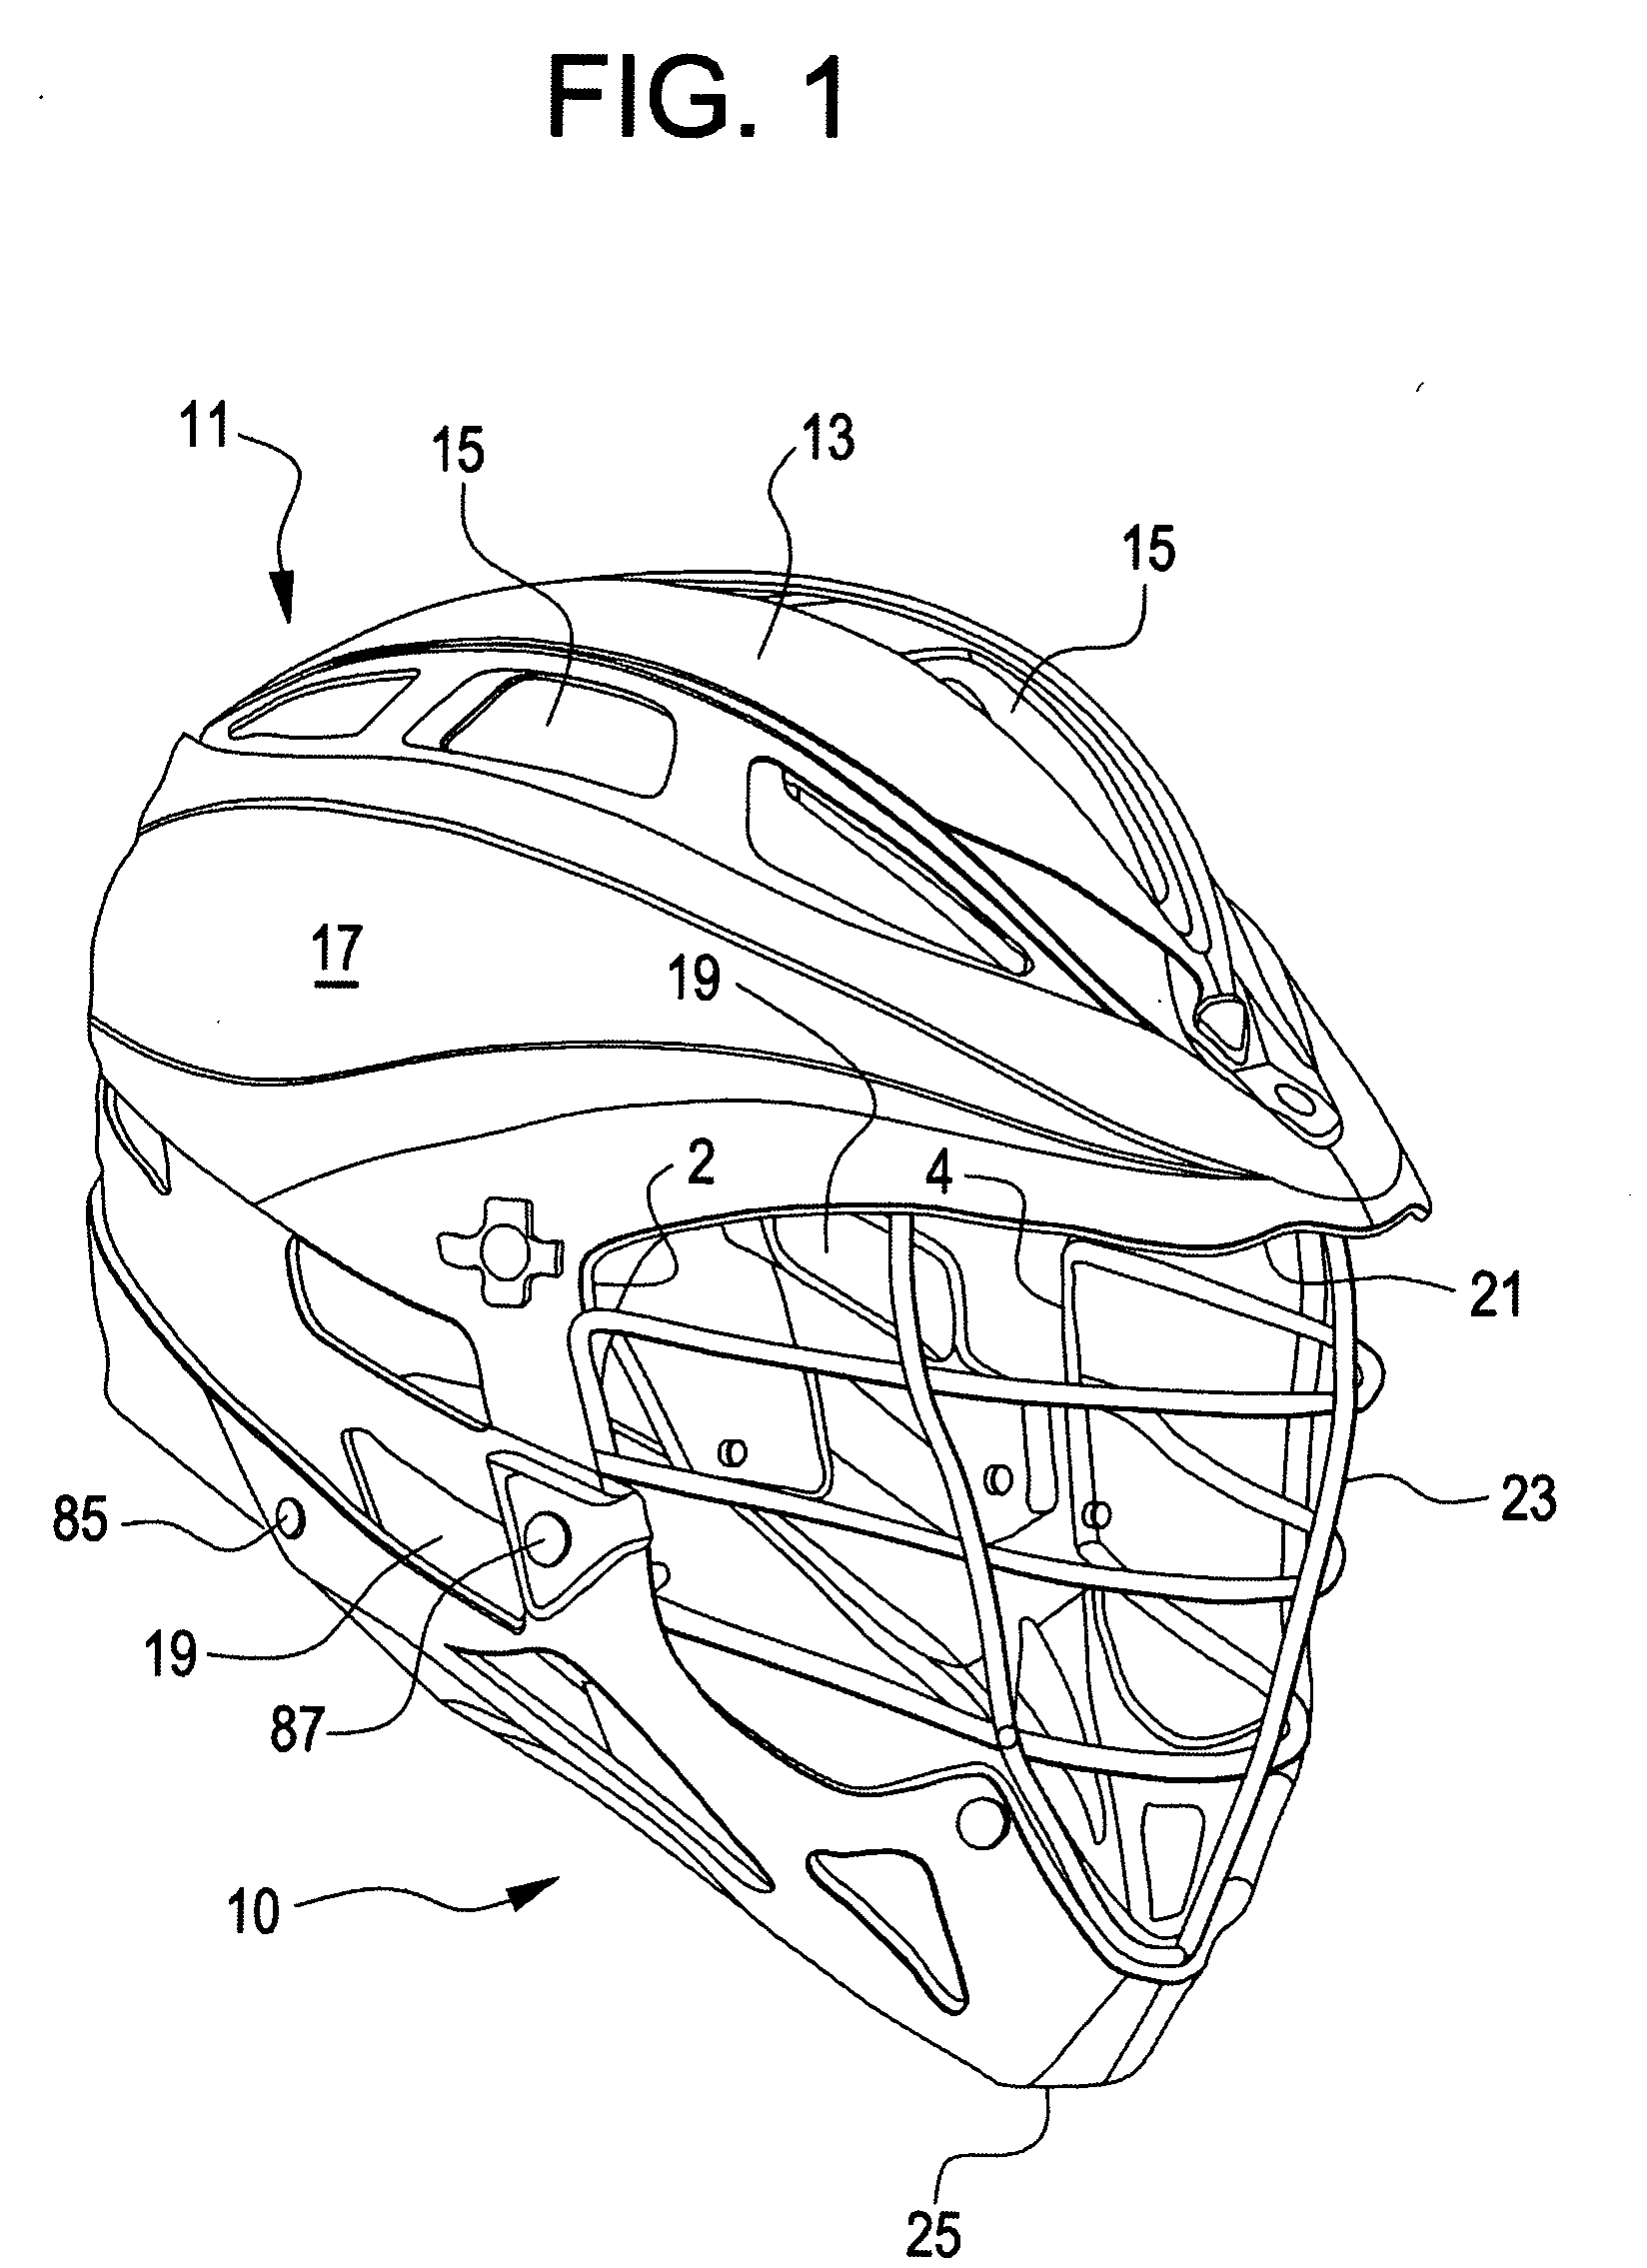 Sport helmet